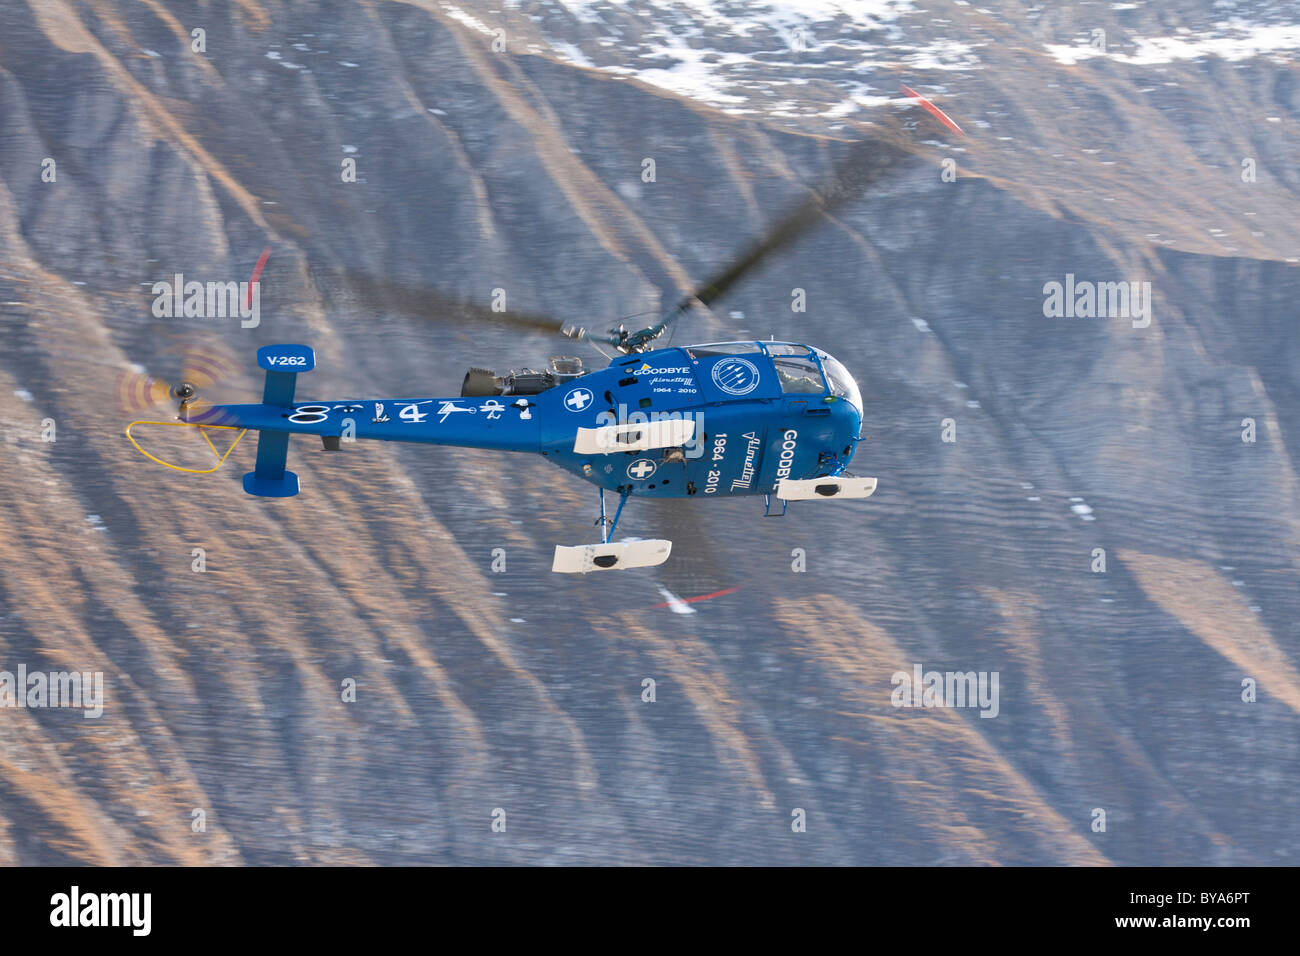 Vol d'adieu de l'hélicoptère militaire suisse Alouette III avec peinture spéciale, mountain-air show de la Swiss Air Force à Banque D'Images